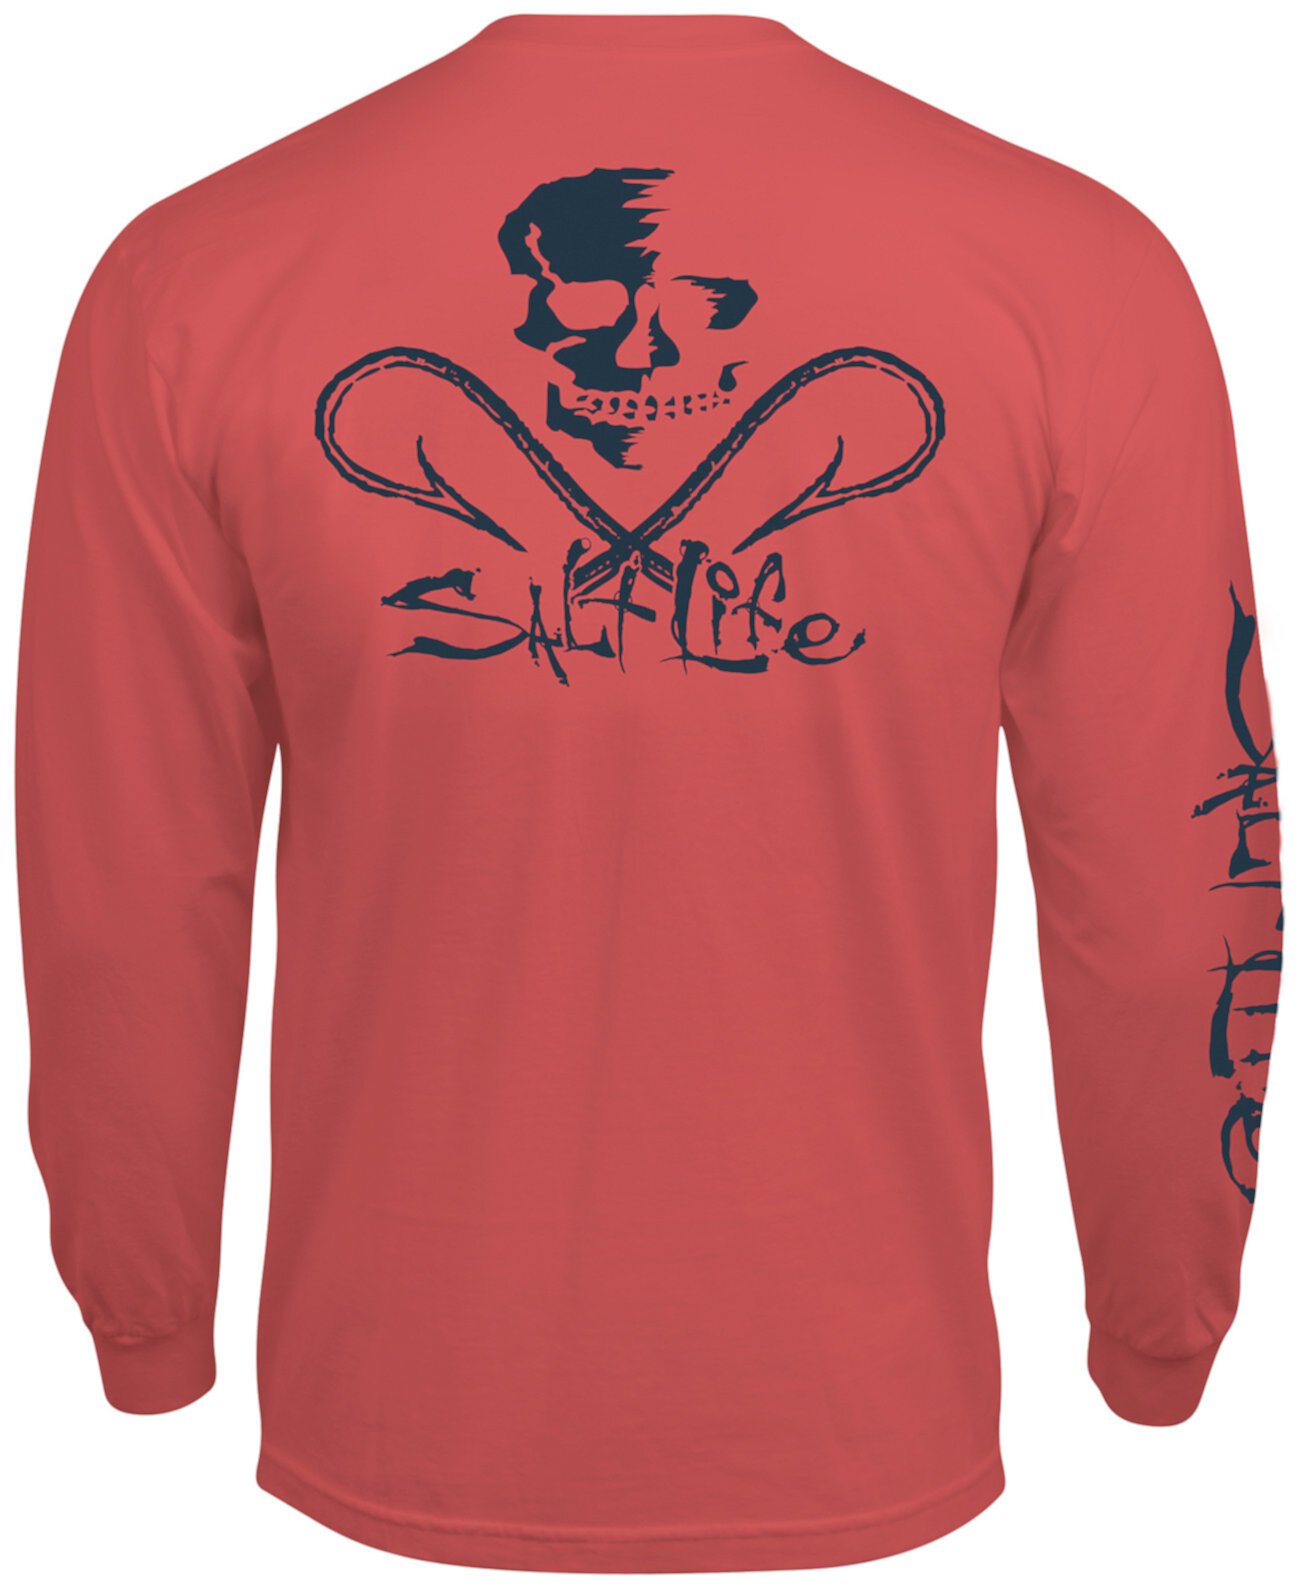 Мужская футболка с длинными рукавами и логотипом Skull & Hooks Salt Life